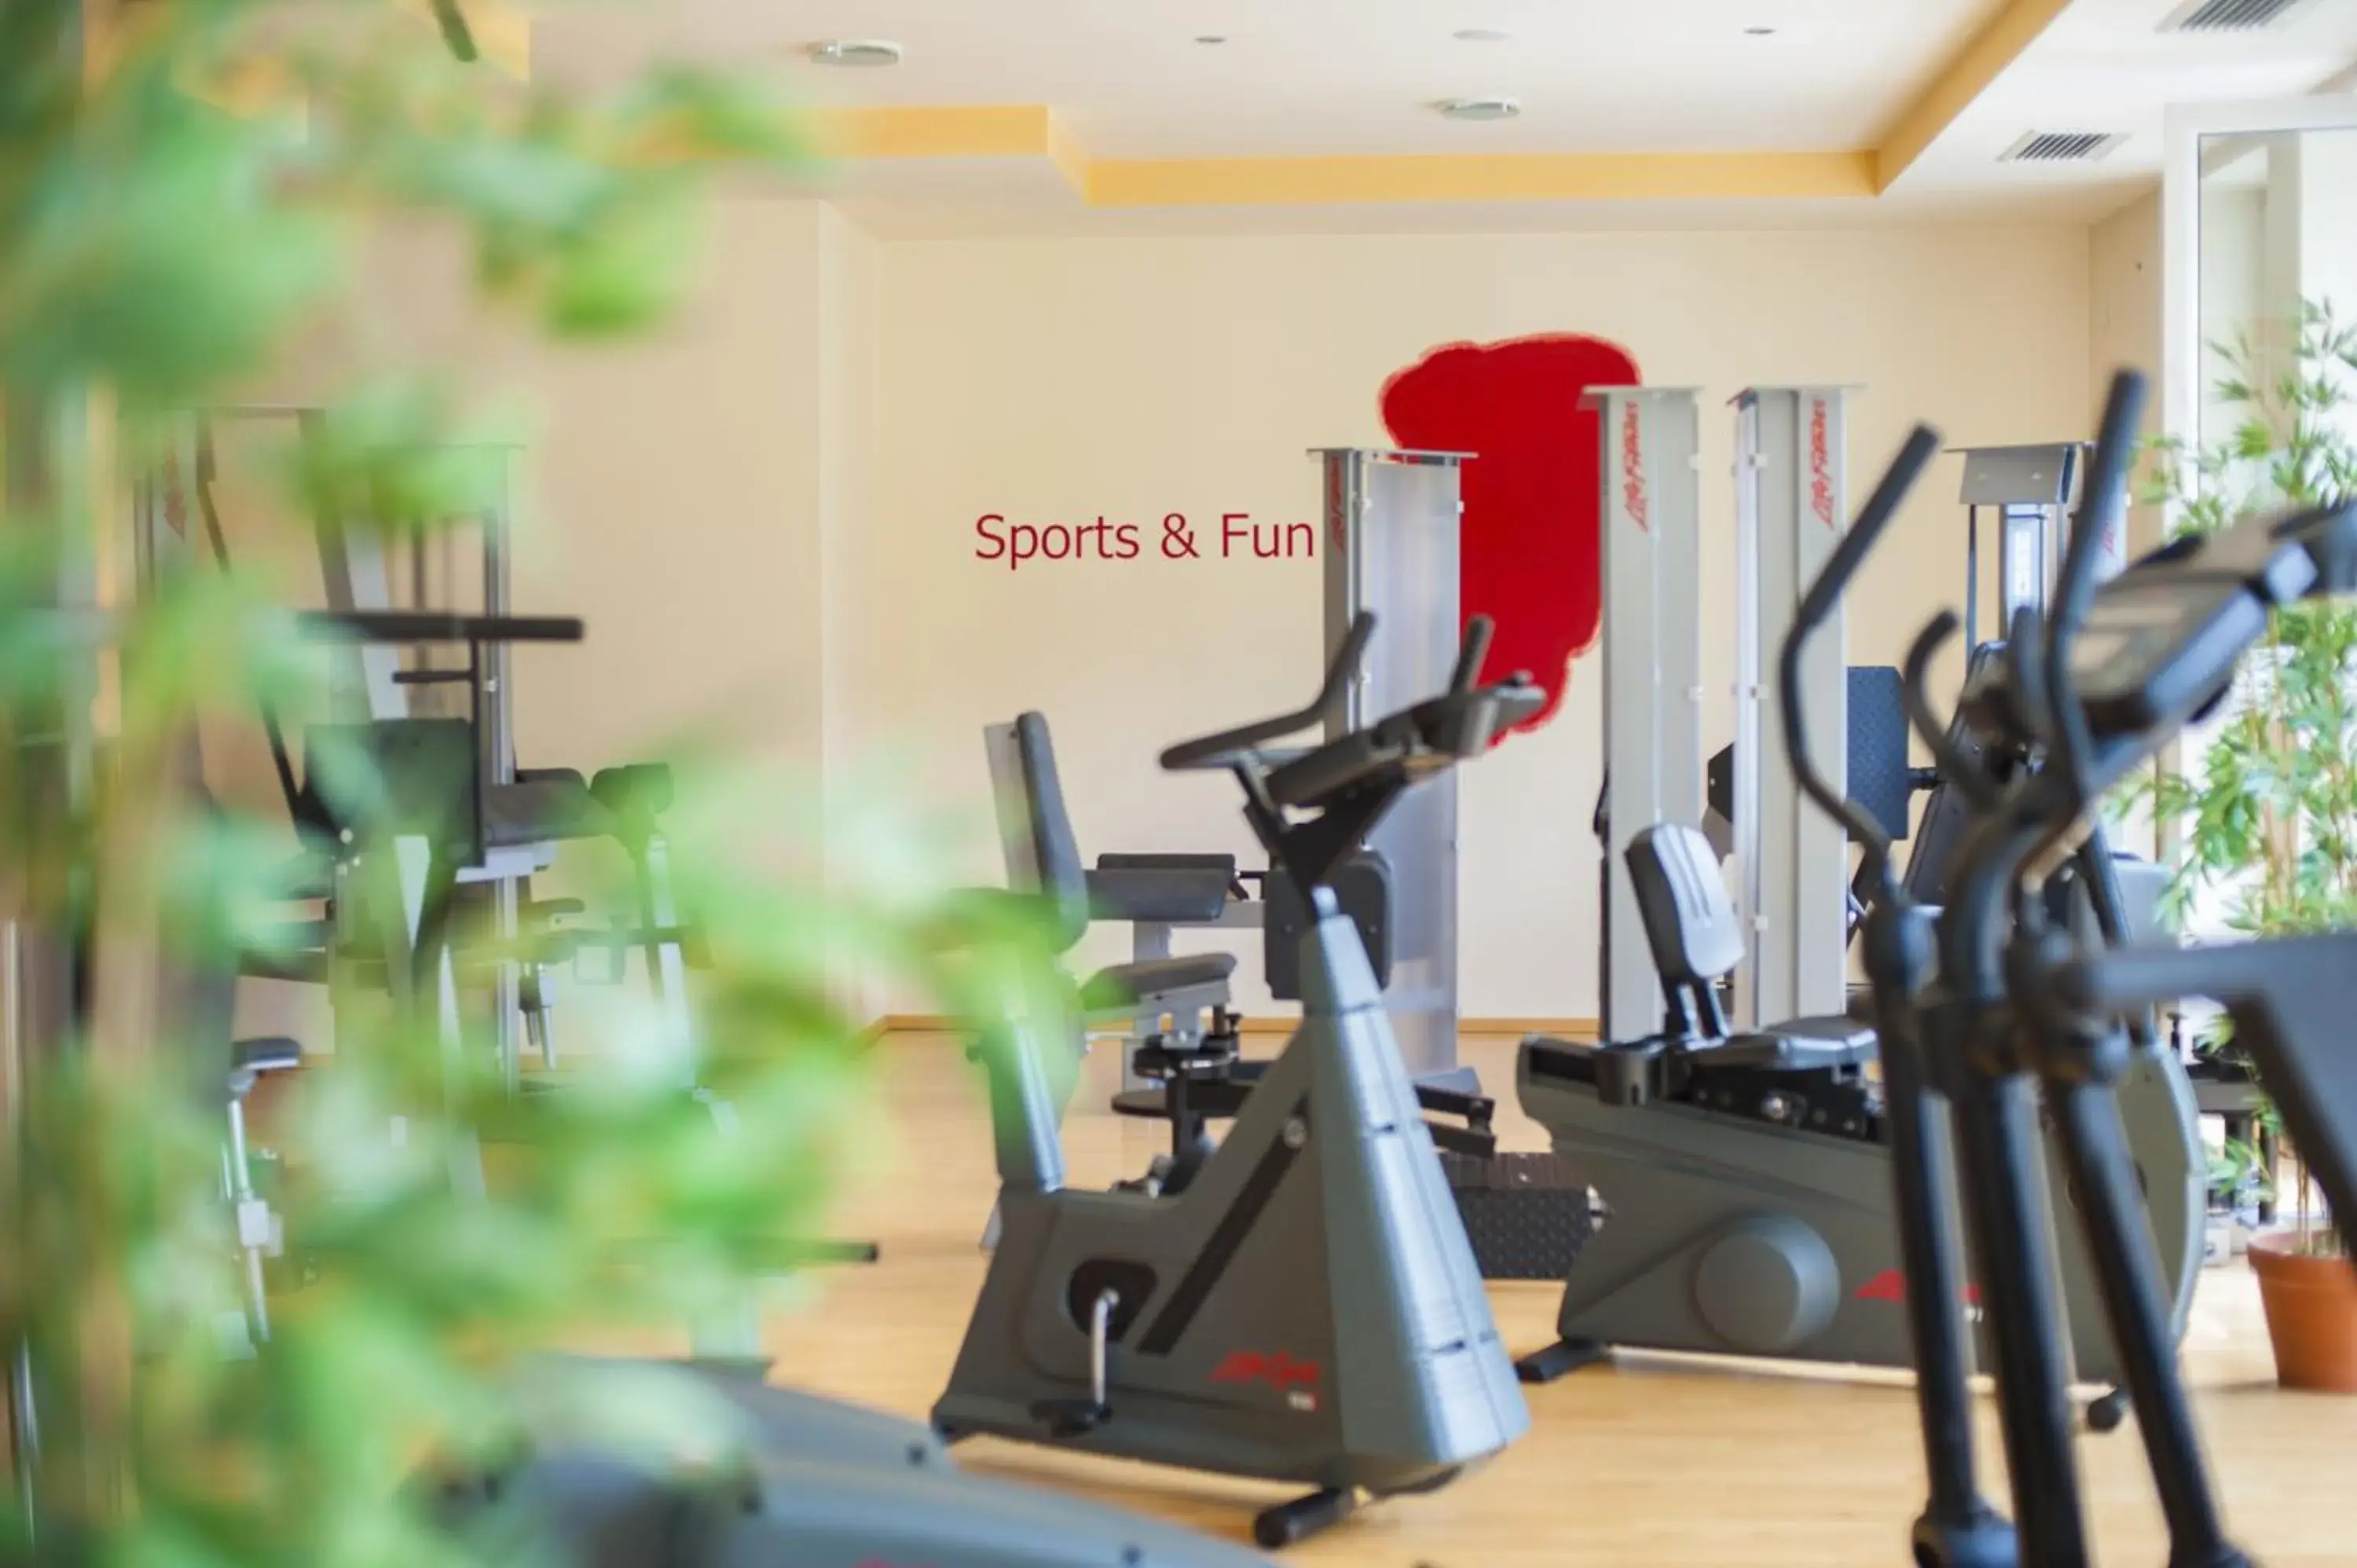 Fitness centre/facilities, Fitness Center/Facilities in Impuls Hotel Tirol